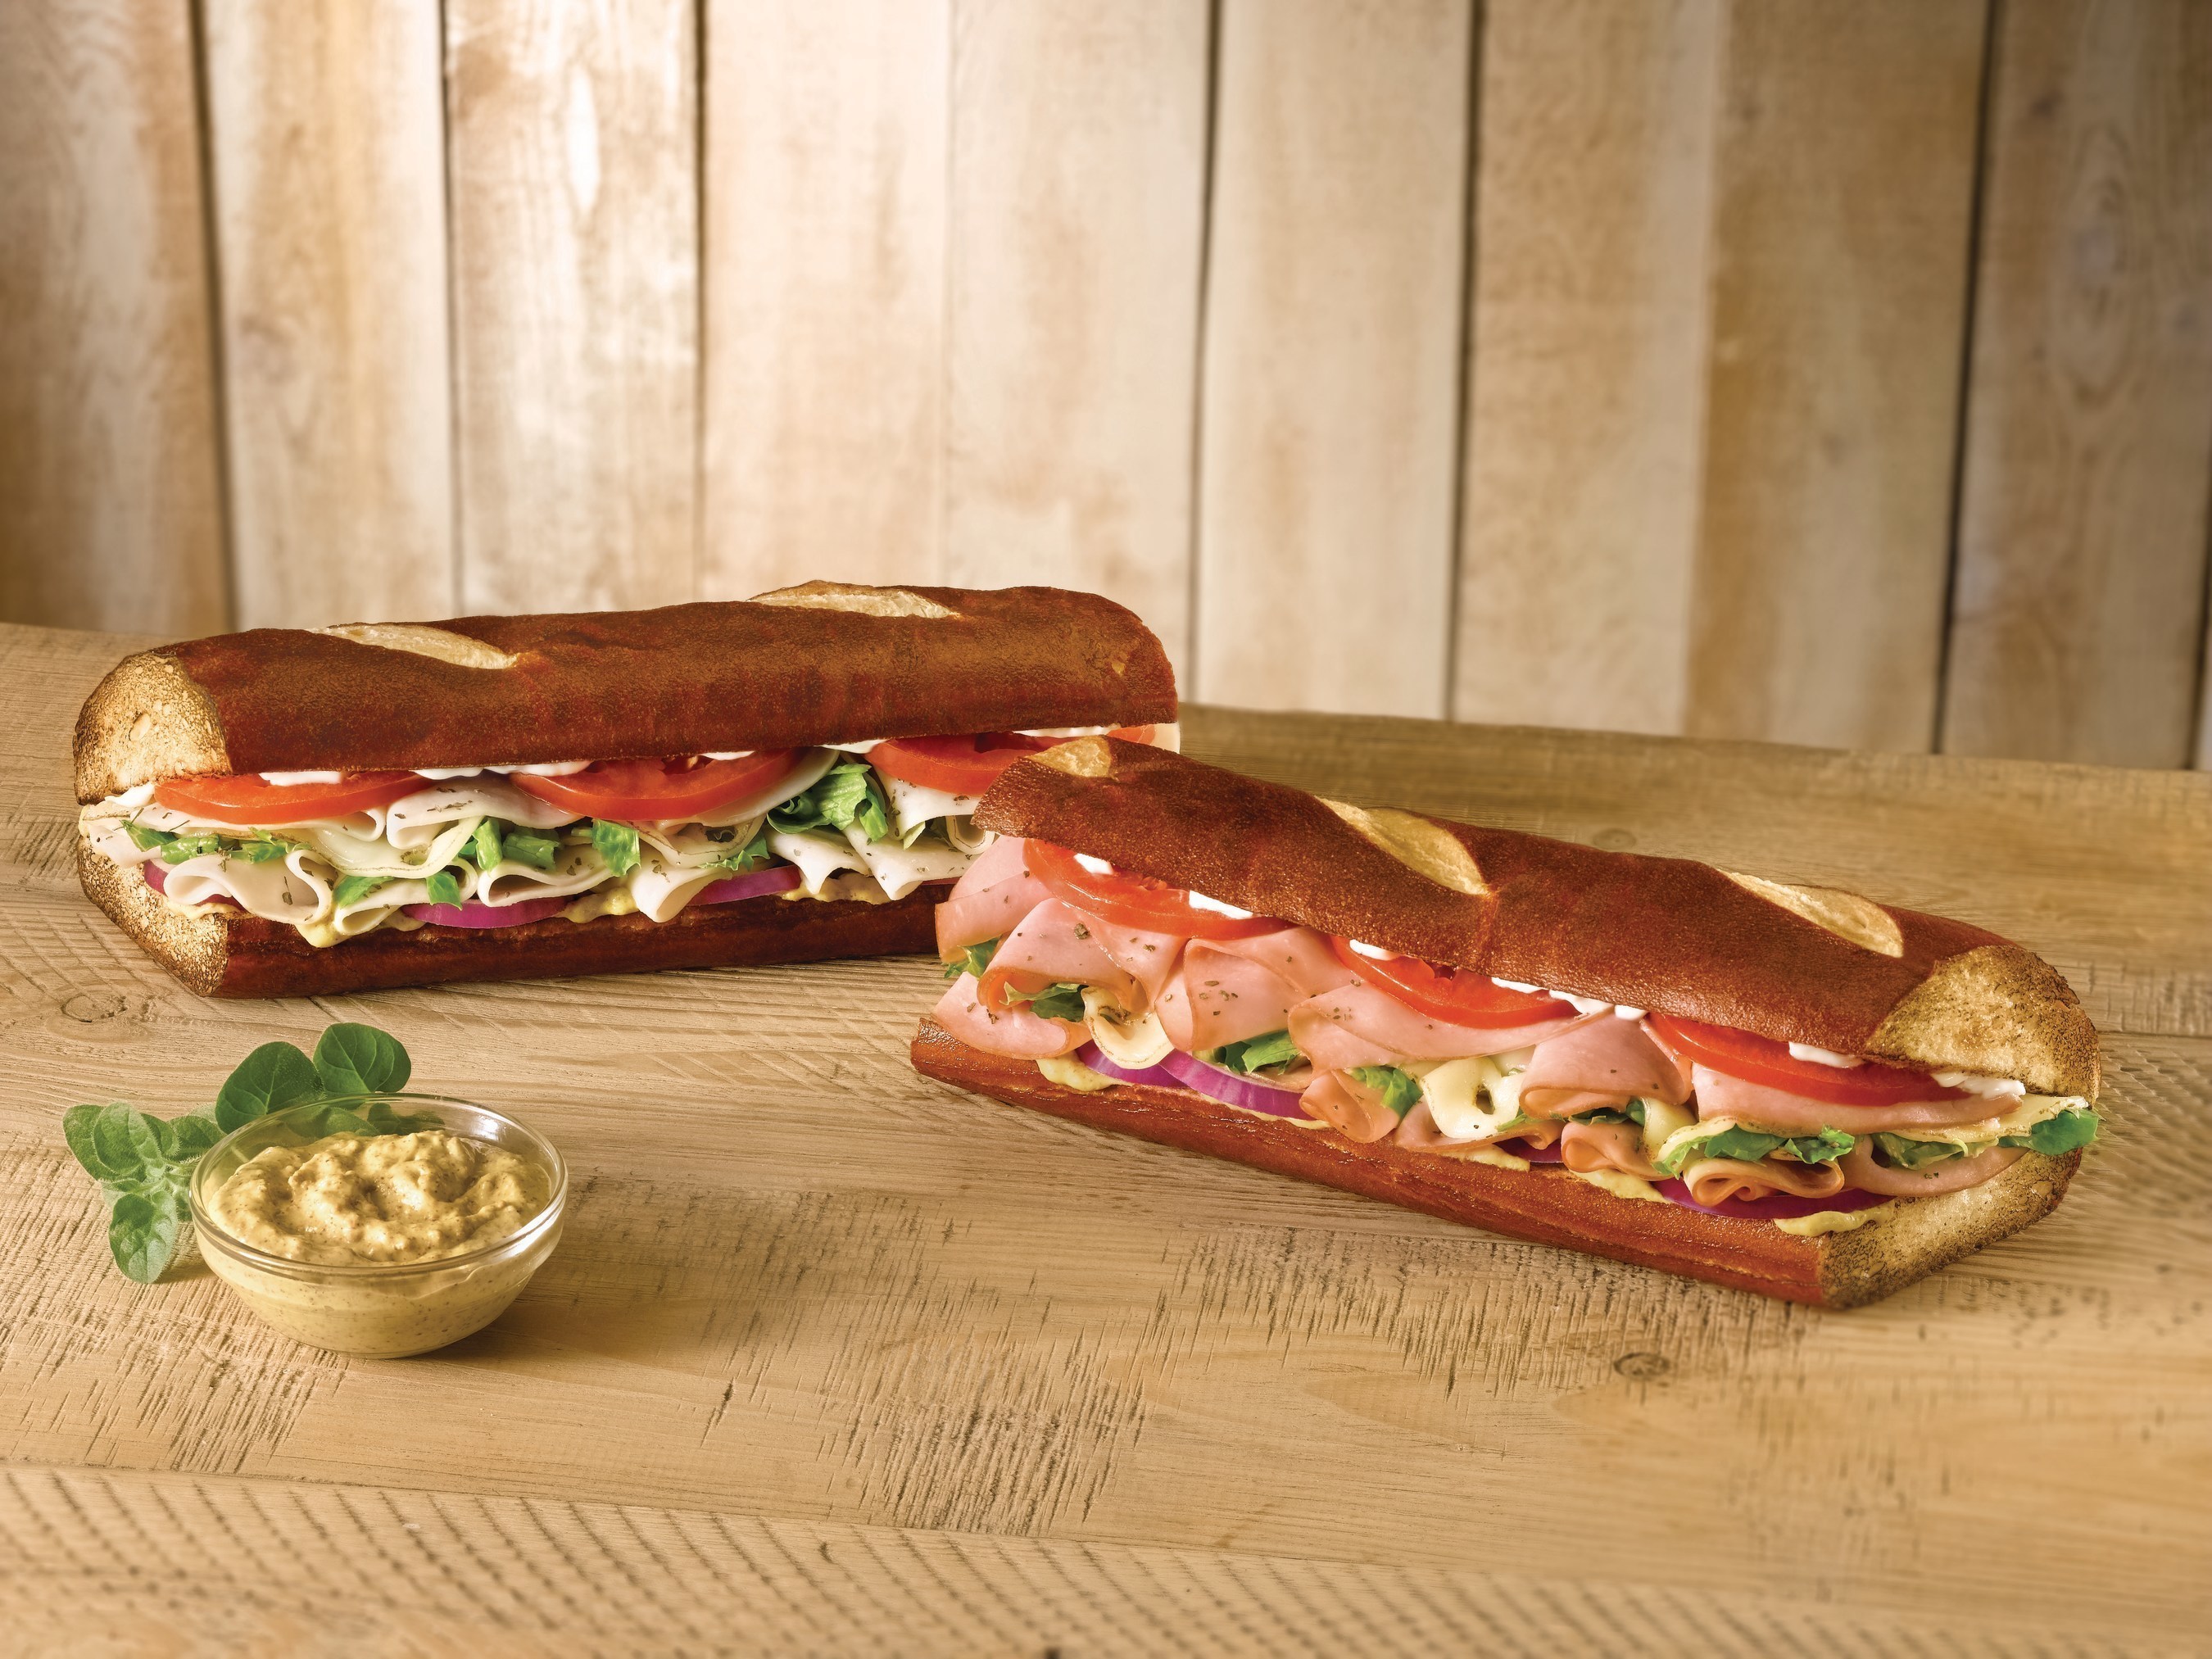 Quiznos launches new pretzel bread menu offerings, Ham on Pretzel Bread and Turkey on Pretzel Bread.